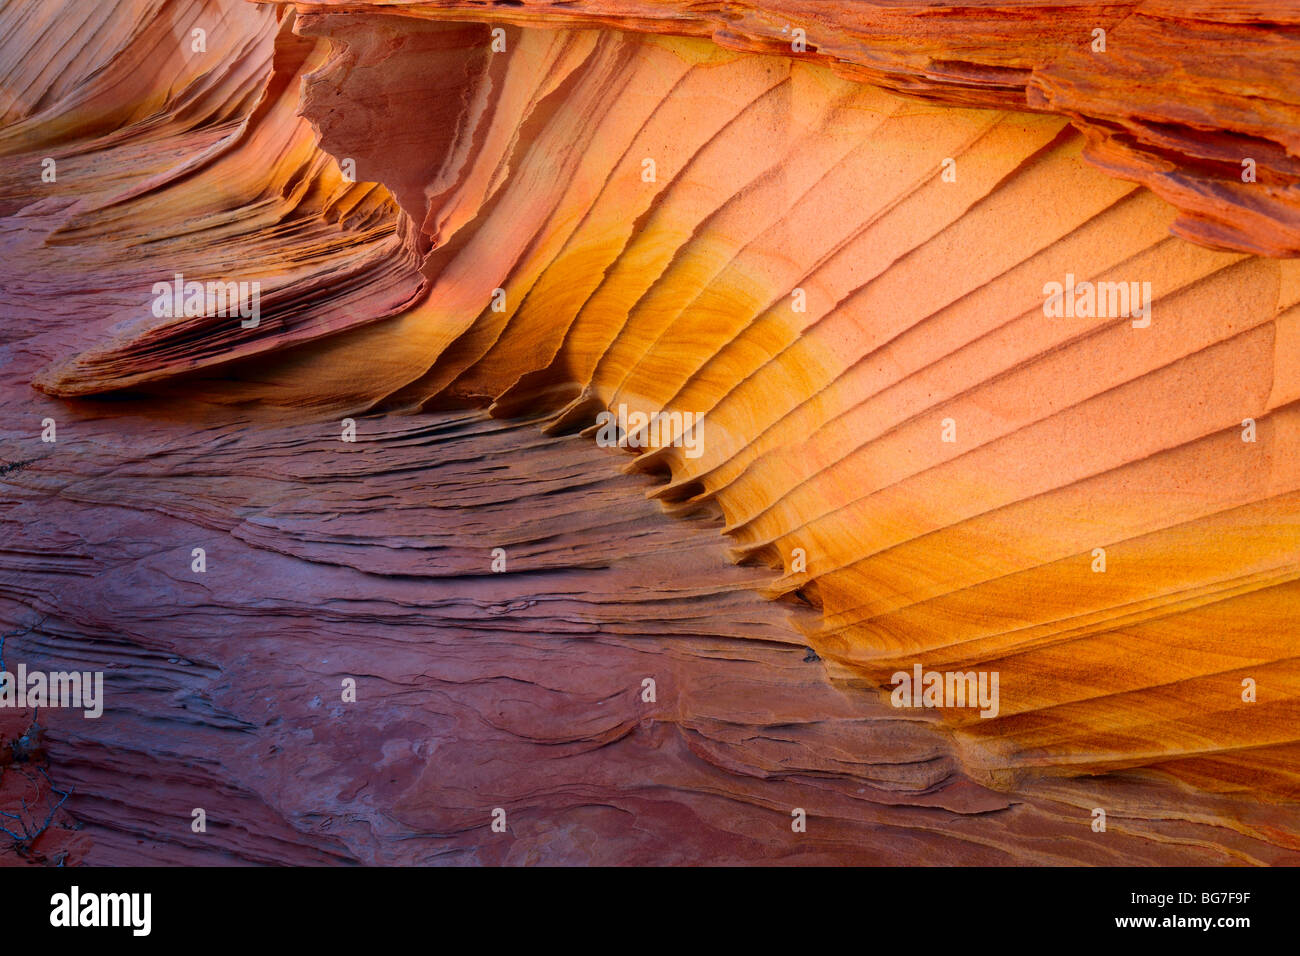 Fantastische Farben und Formen im Sandstein detailliert Vermilion Cliffs National Monument, Arizona Stockfoto